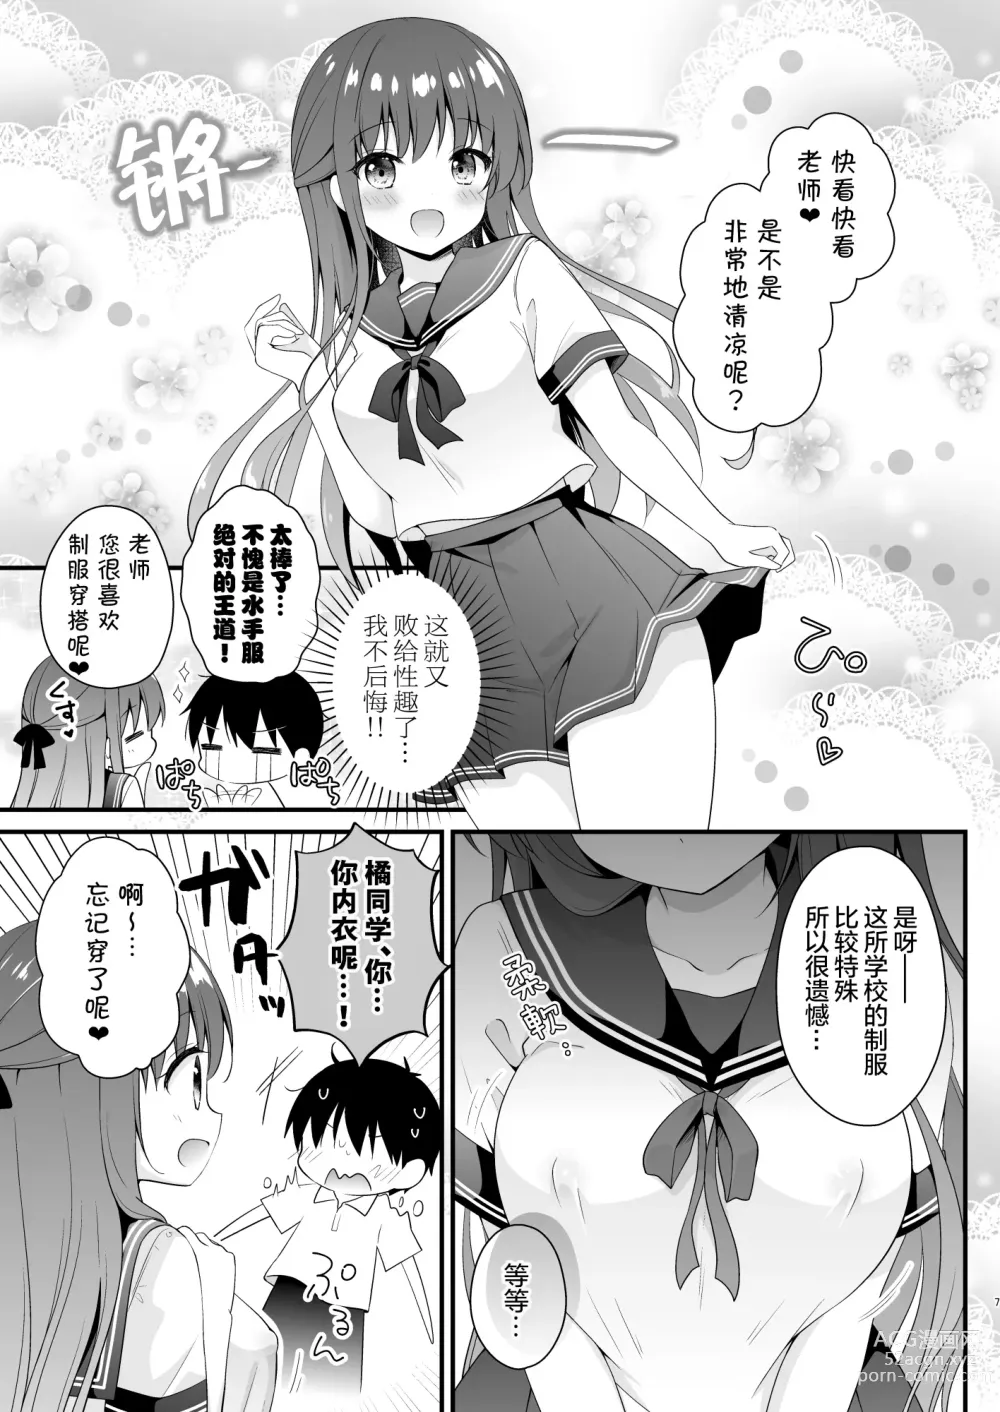 Page 6 of doujinshi 老师、这是我们2人之间的小秘密哟♥ ~水手服的秘密~